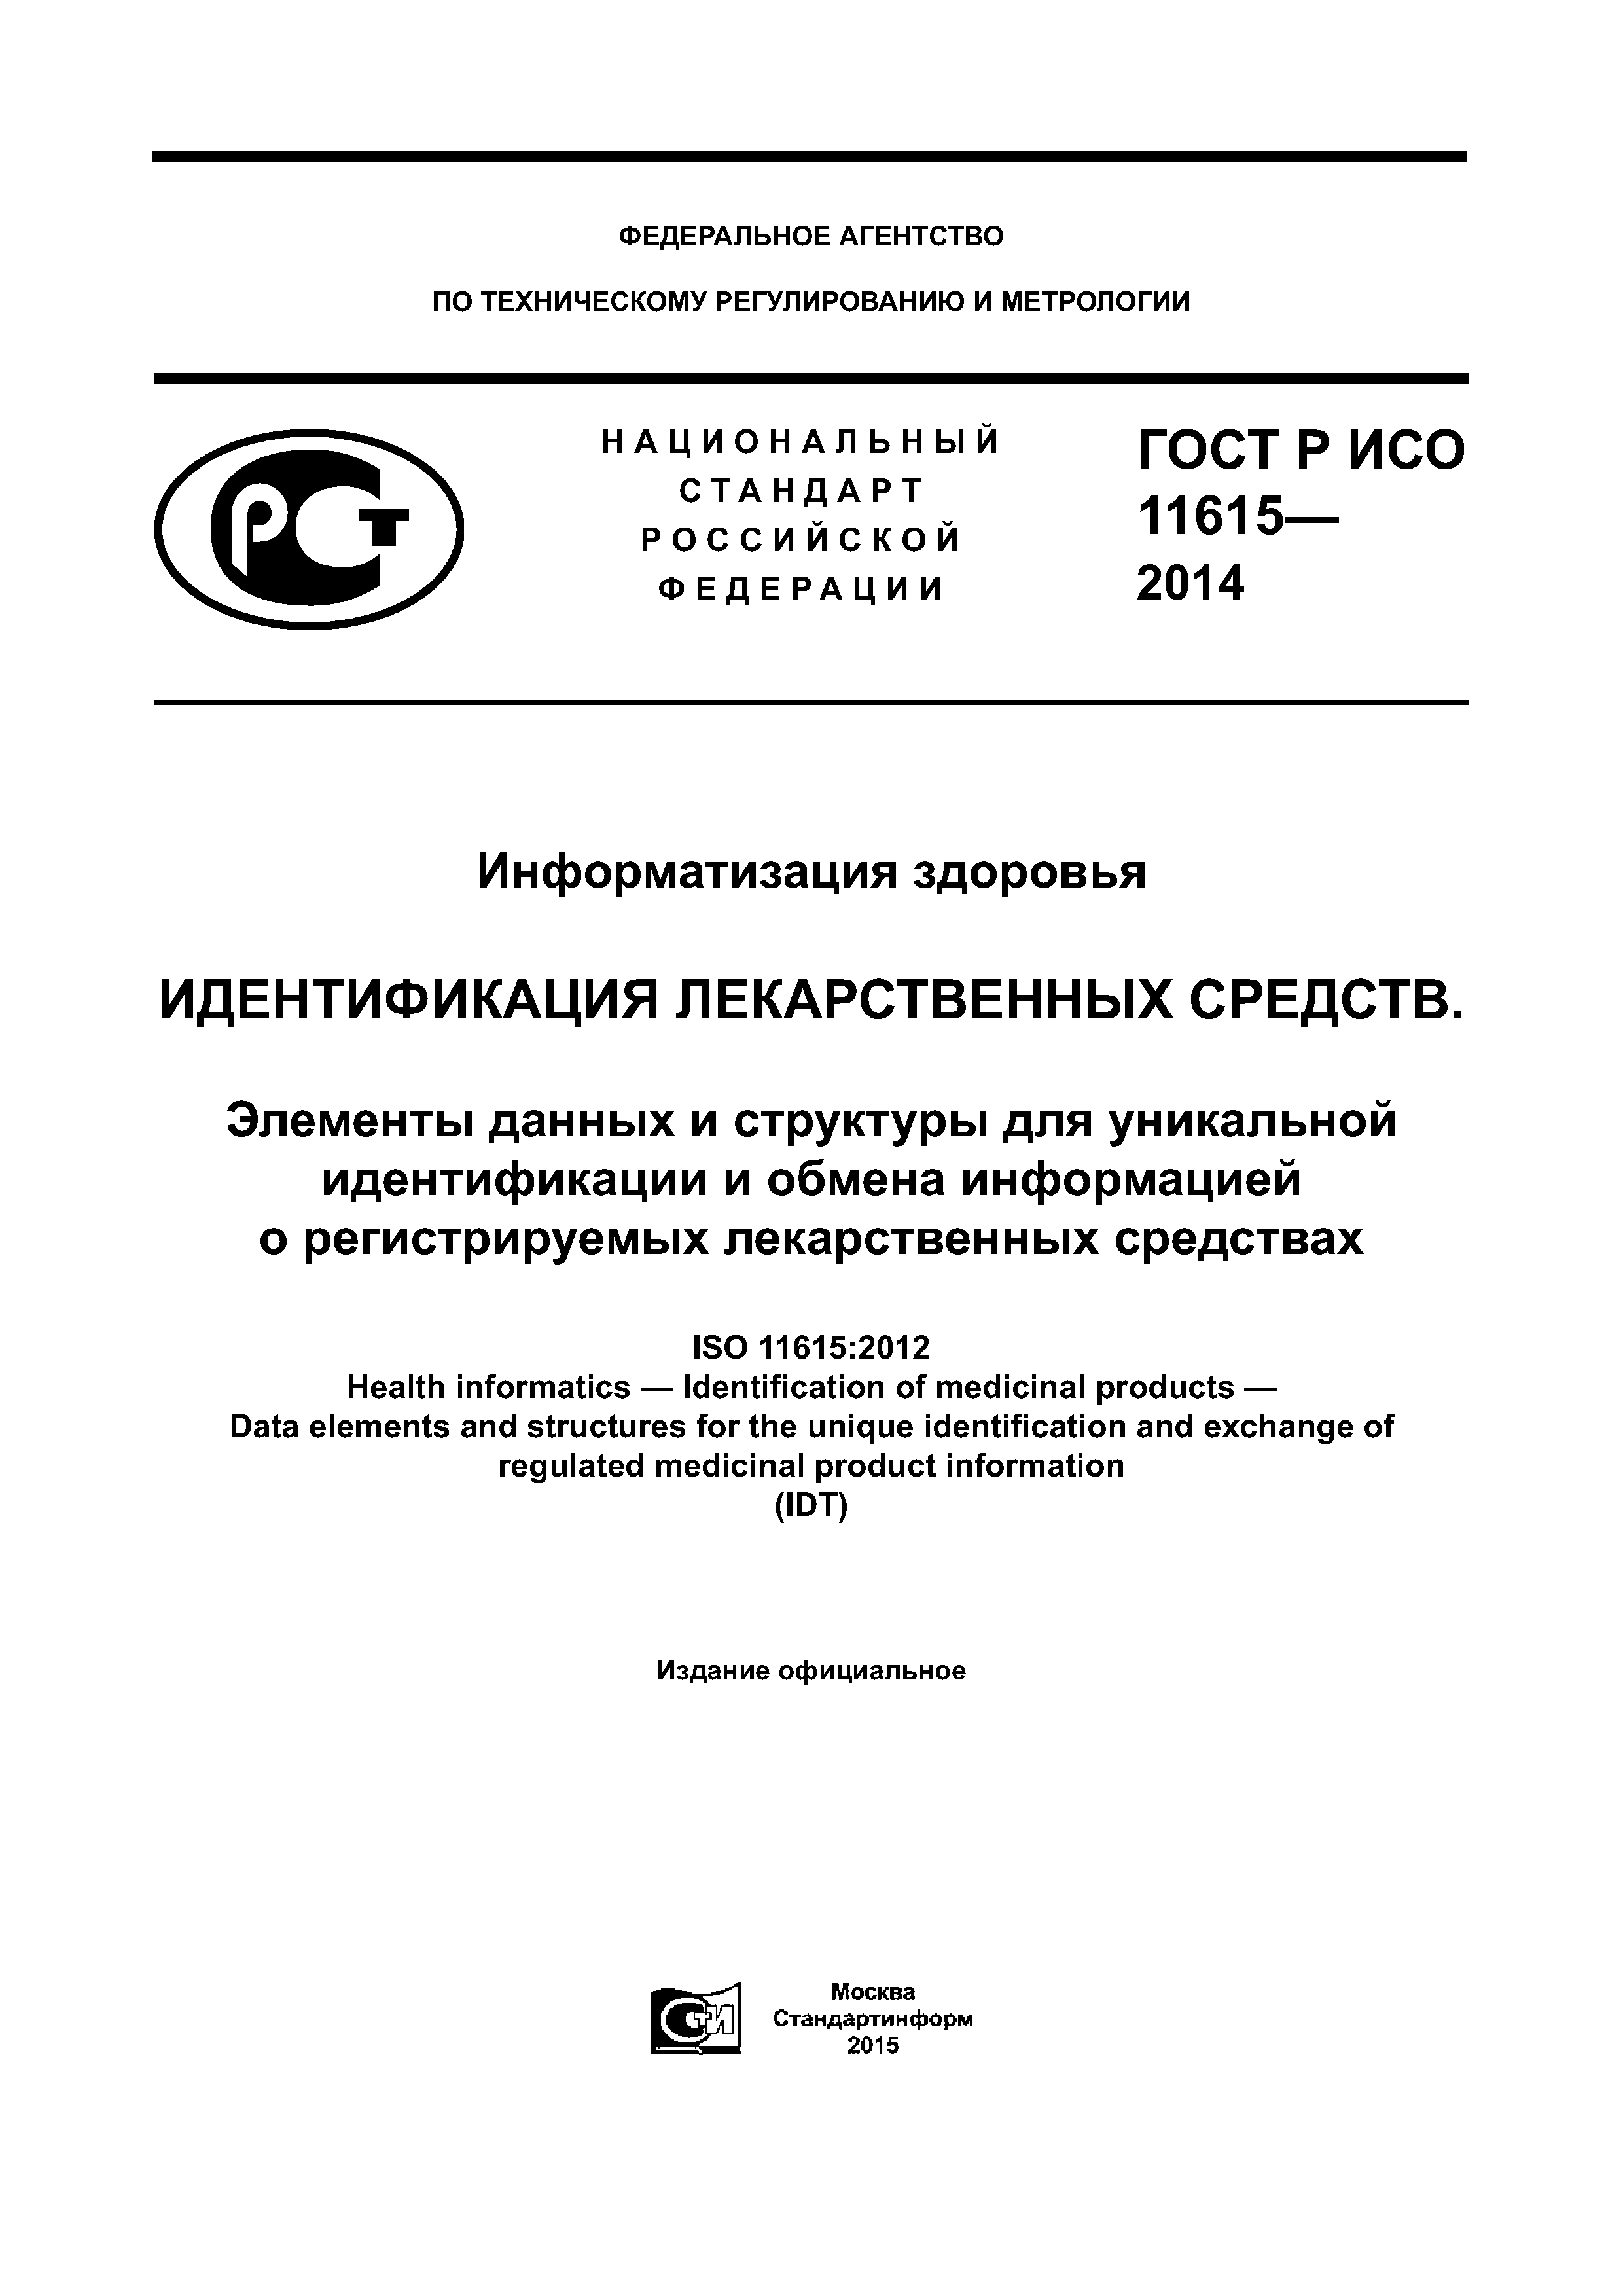 ГОСТ Р ИСО 11615-2014